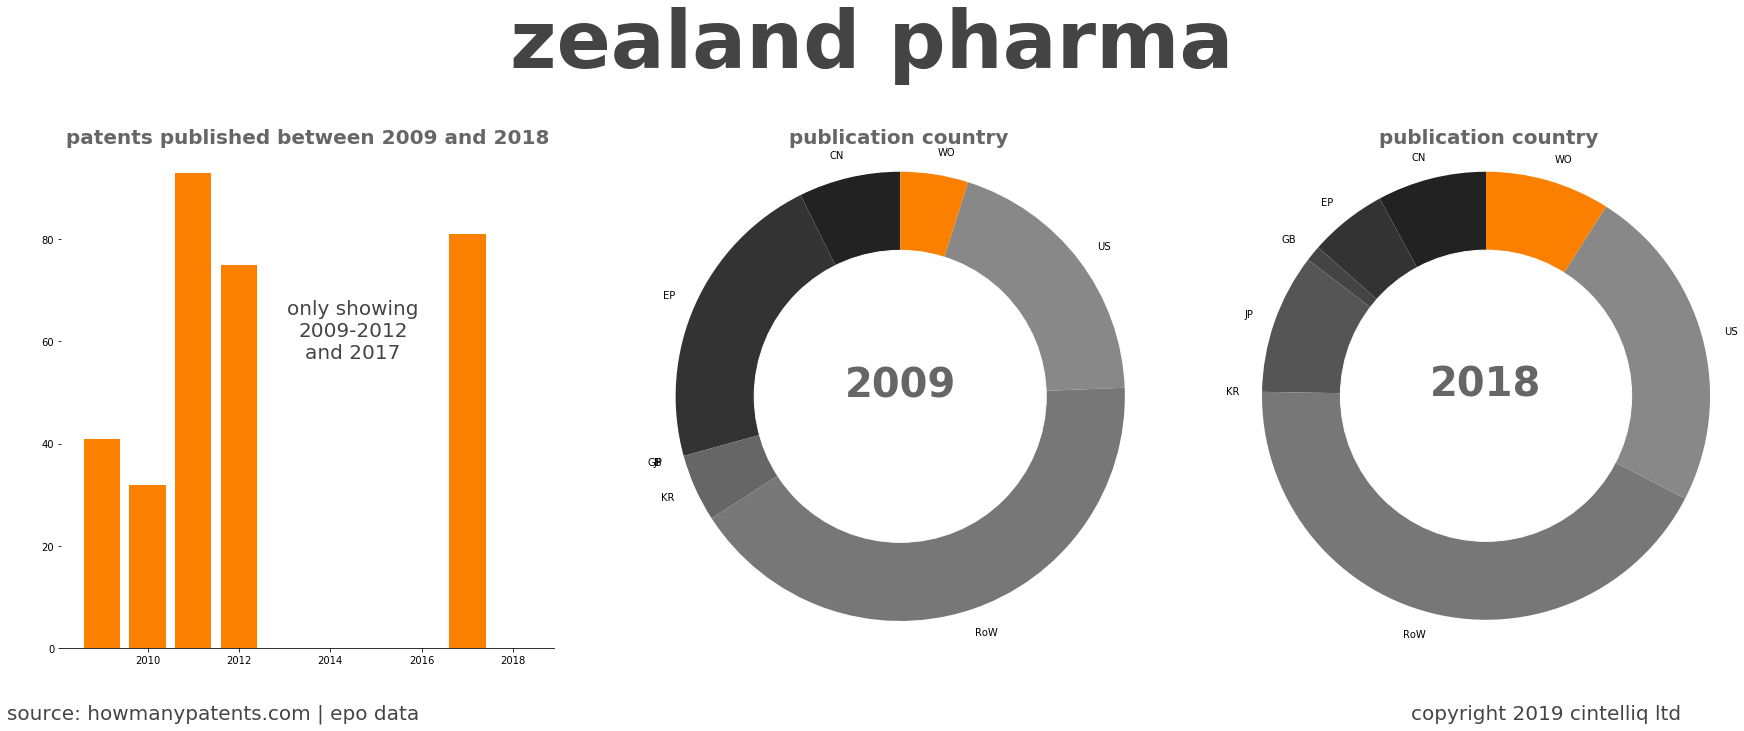 summary of patents for Zealand Pharma